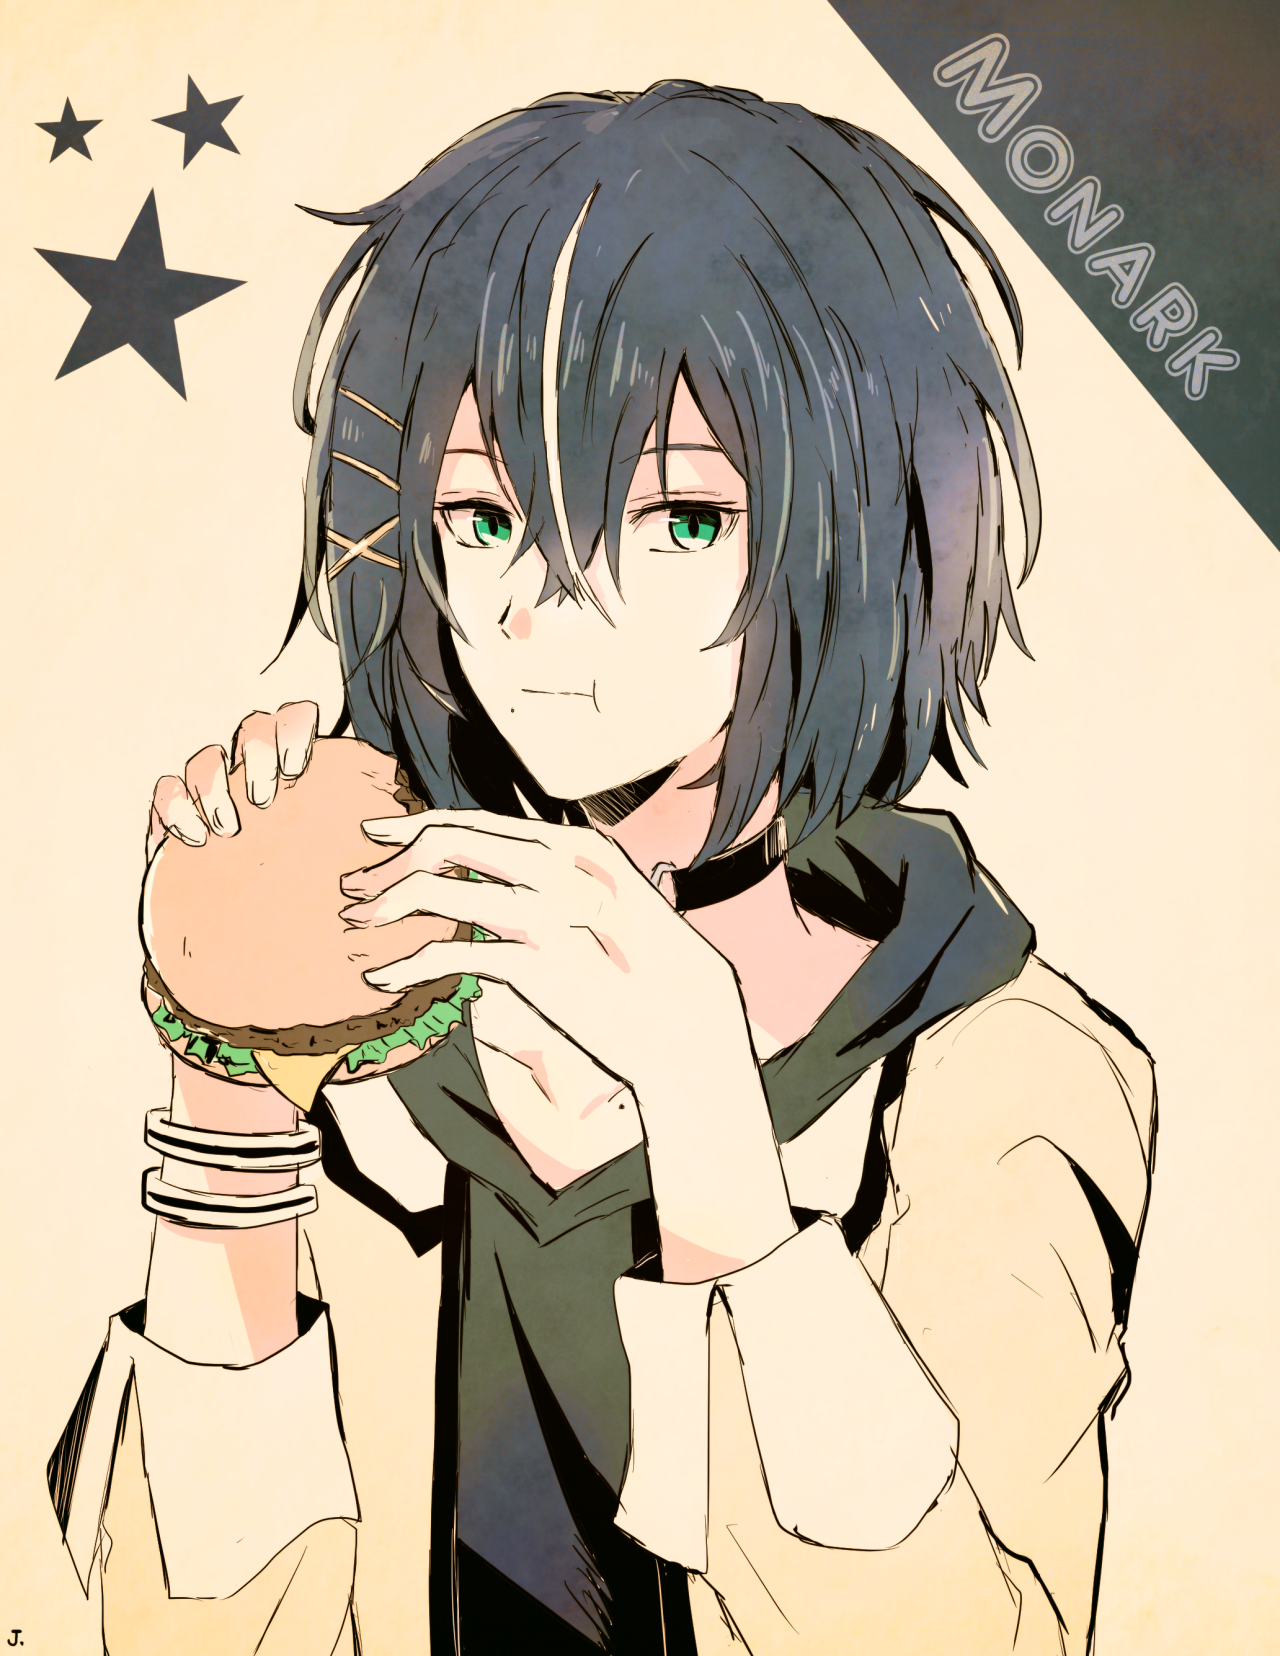 ハンバーガーを食べる信哉くん。 #Monark#Shinya Yuda#モナーク#弓田信哉